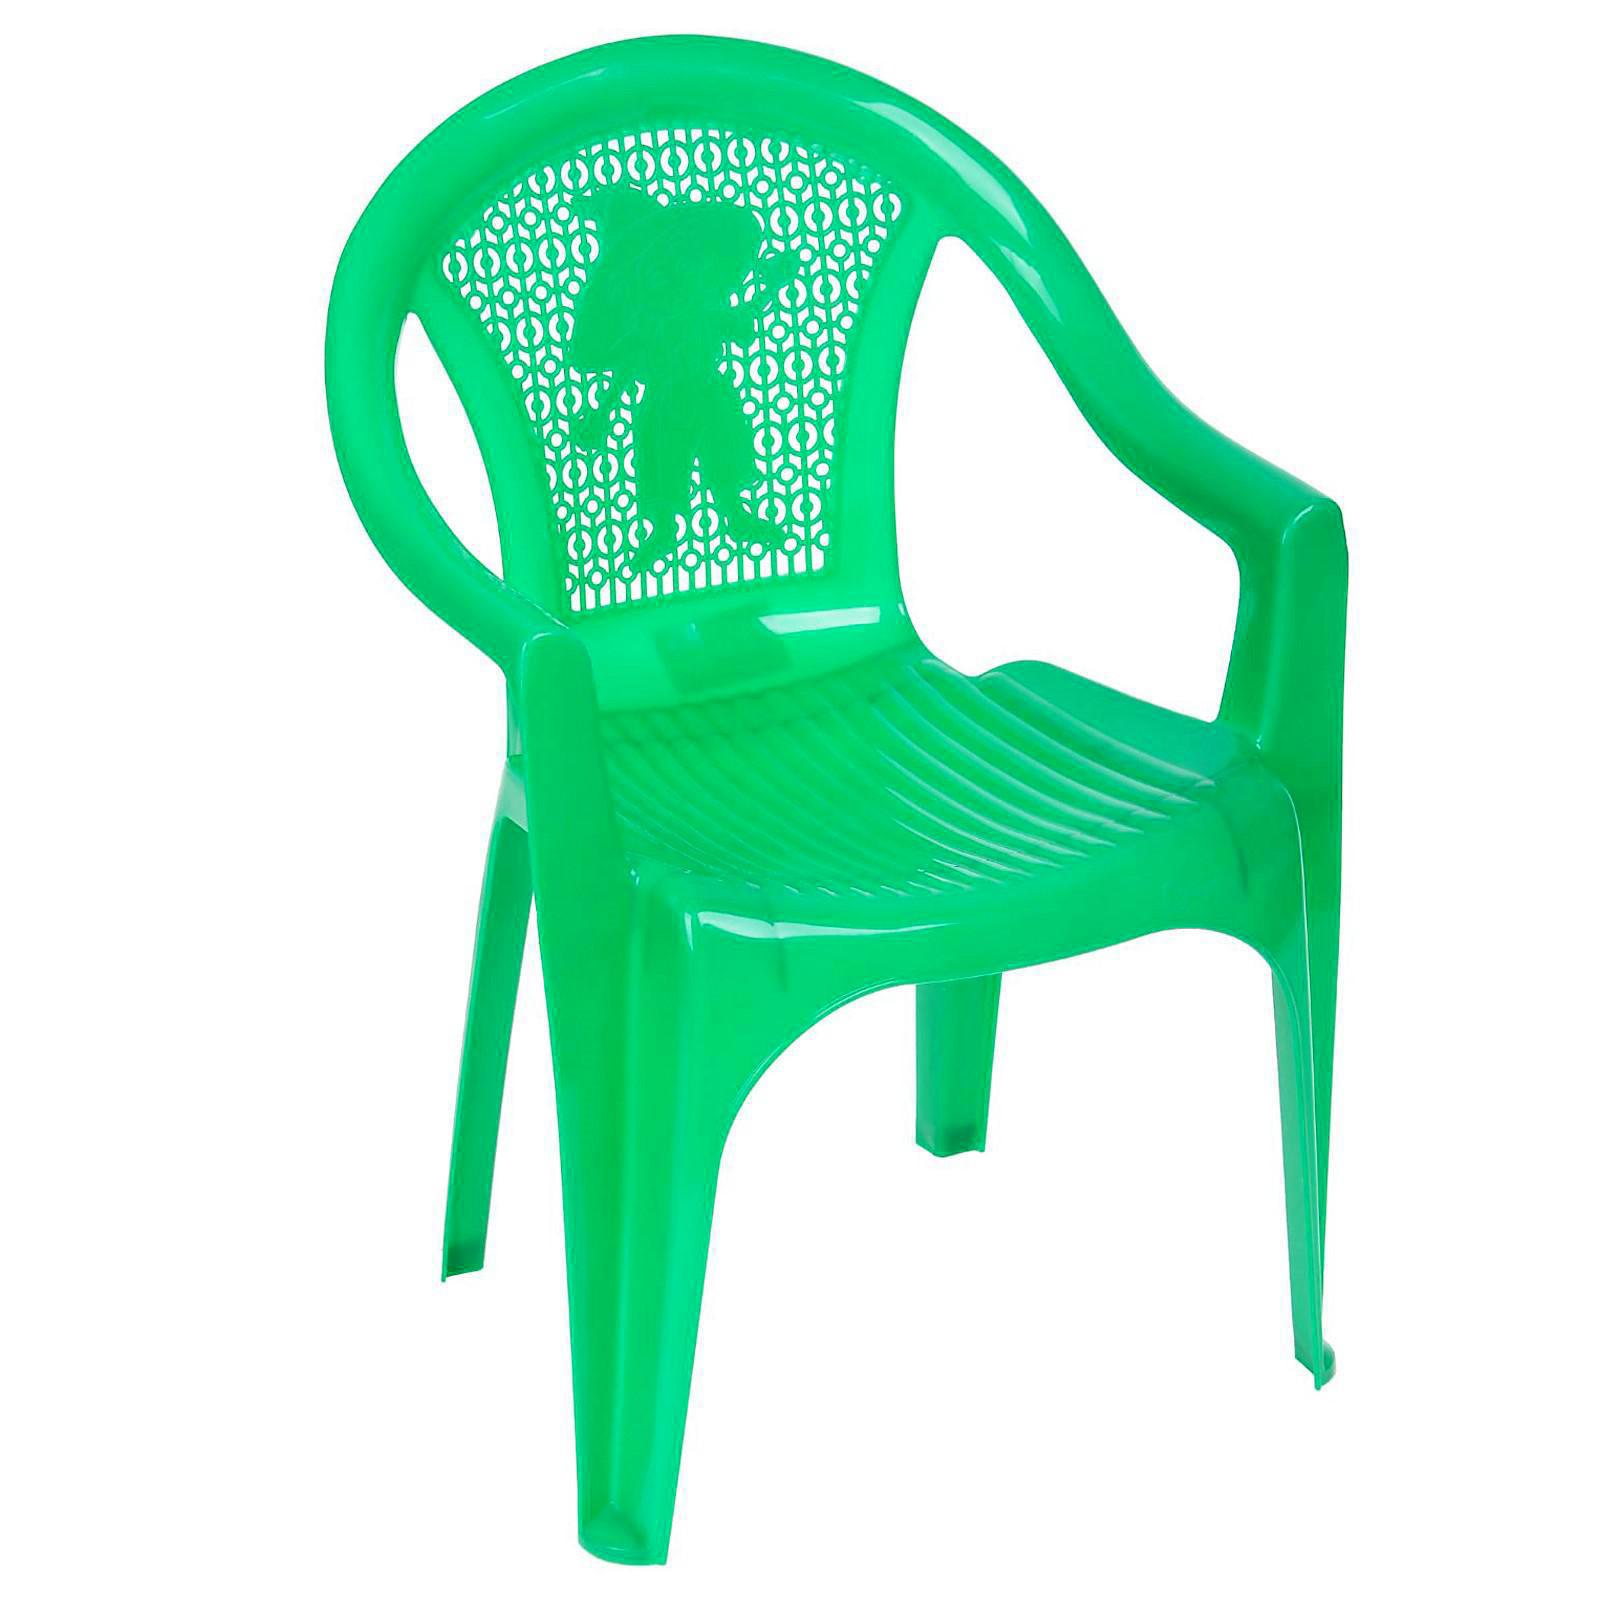 детский стул пластиковый белый